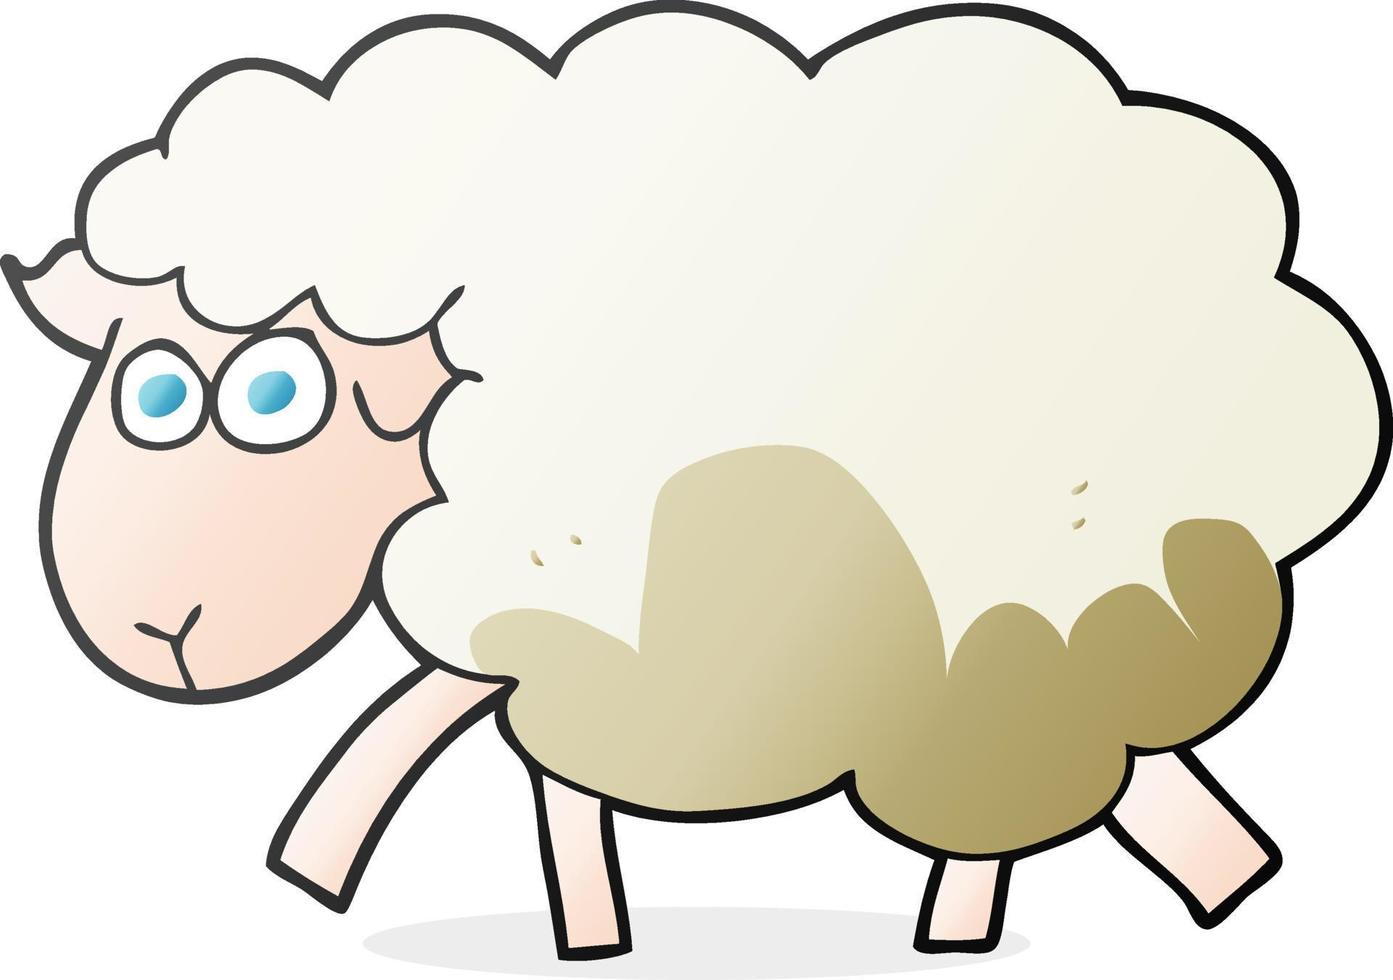 ovelhas enlameadas de desenhos animados desenhados à mão livre vetor